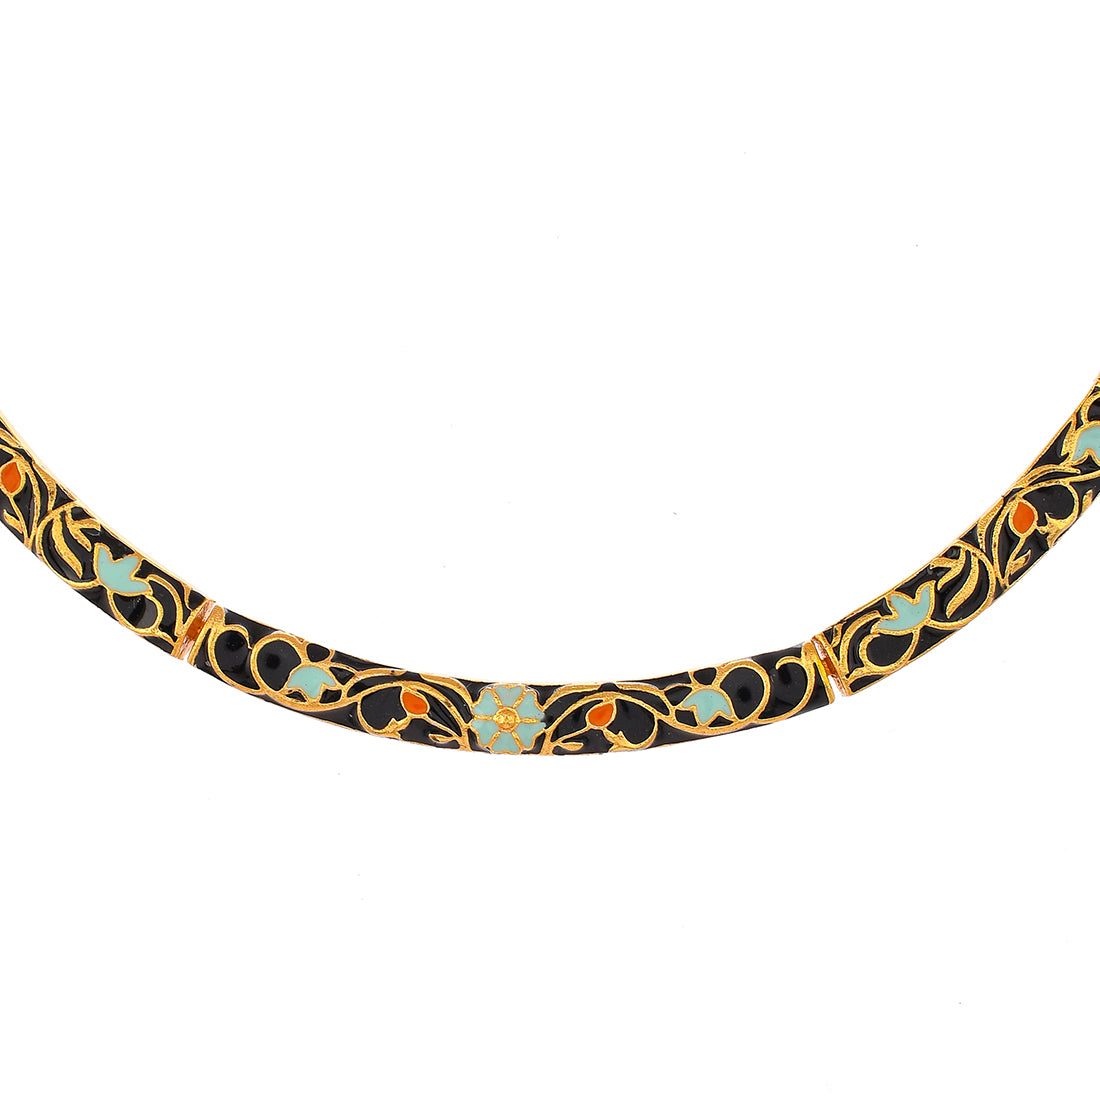 Enameled Elegance Black Gold-Plated Necklace Set